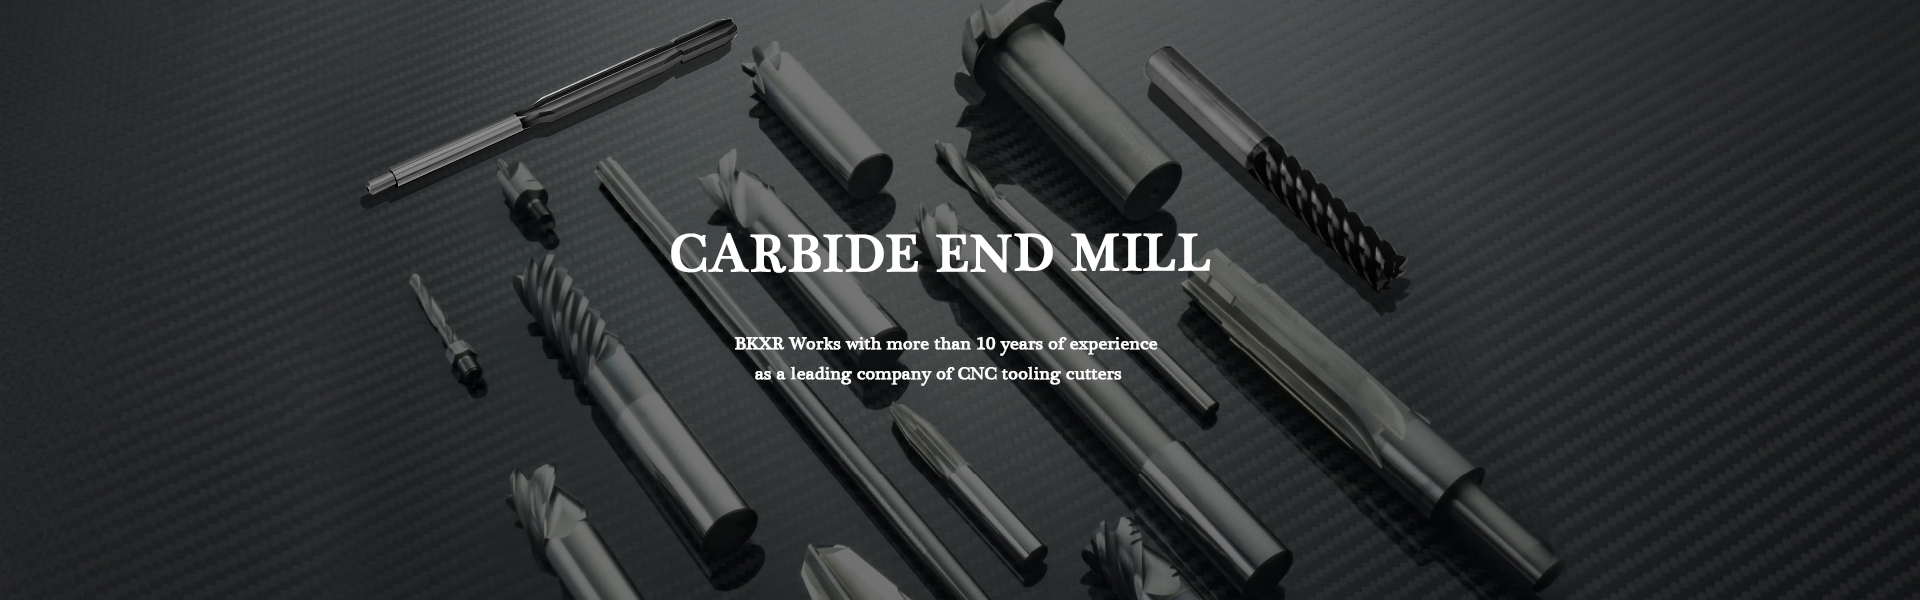 carbide end mill,carbide insert,cnc cutter,Guangdong Berkshire Technology Ltd.